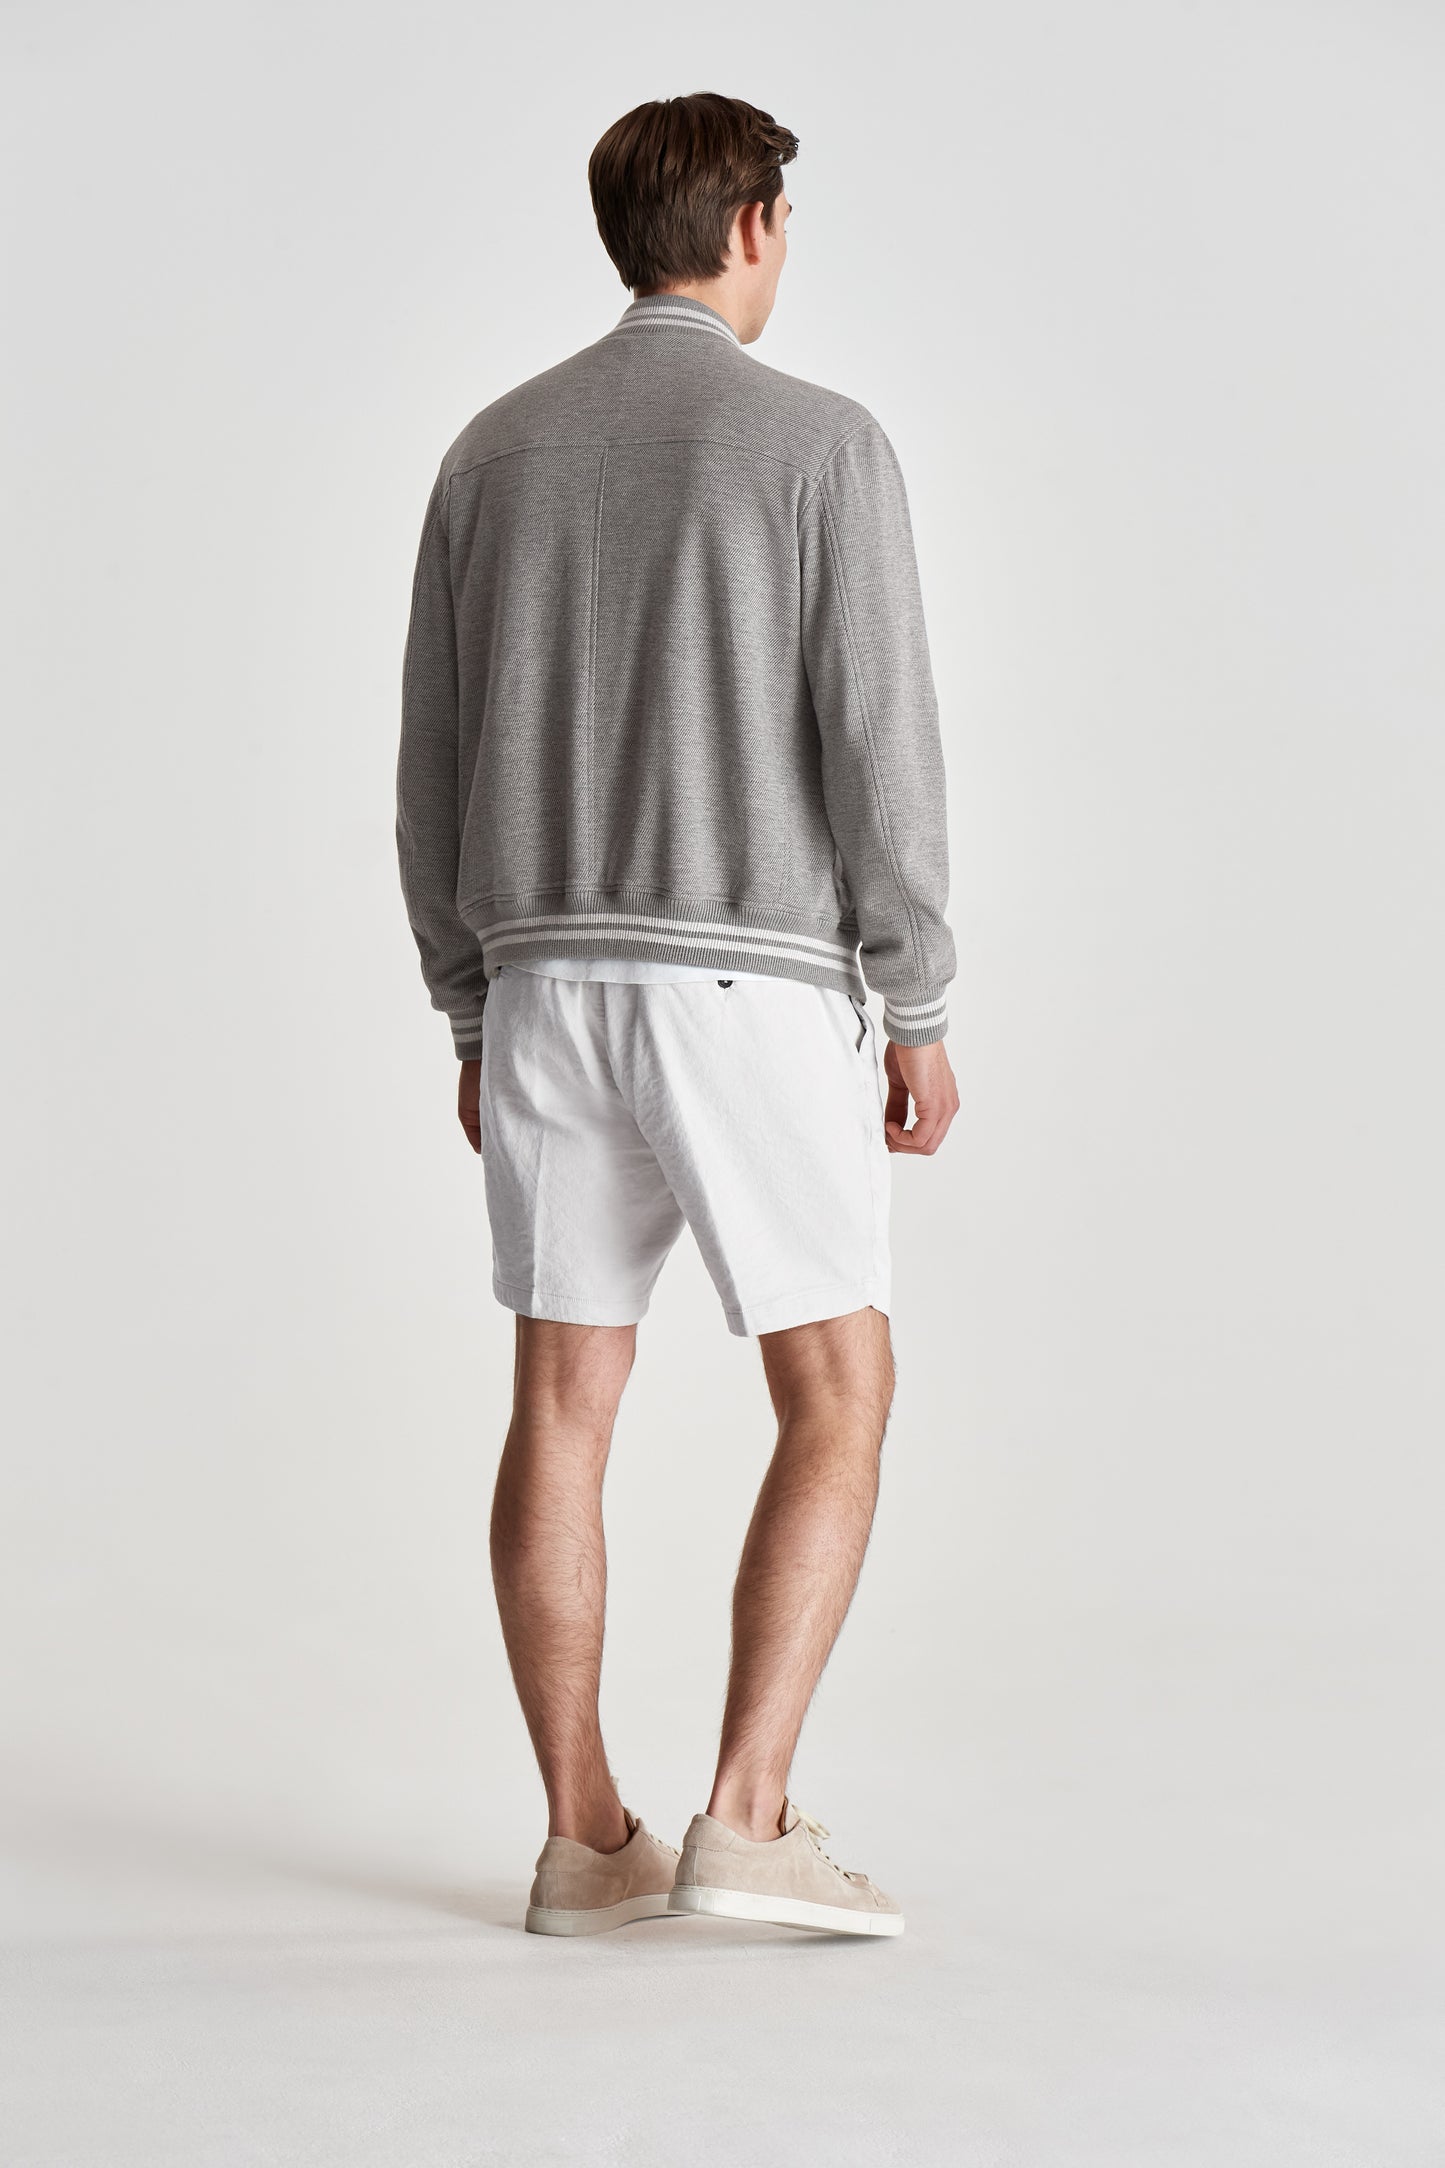 Linen Jersey Pleated Shorts White Model Back Full Length Image